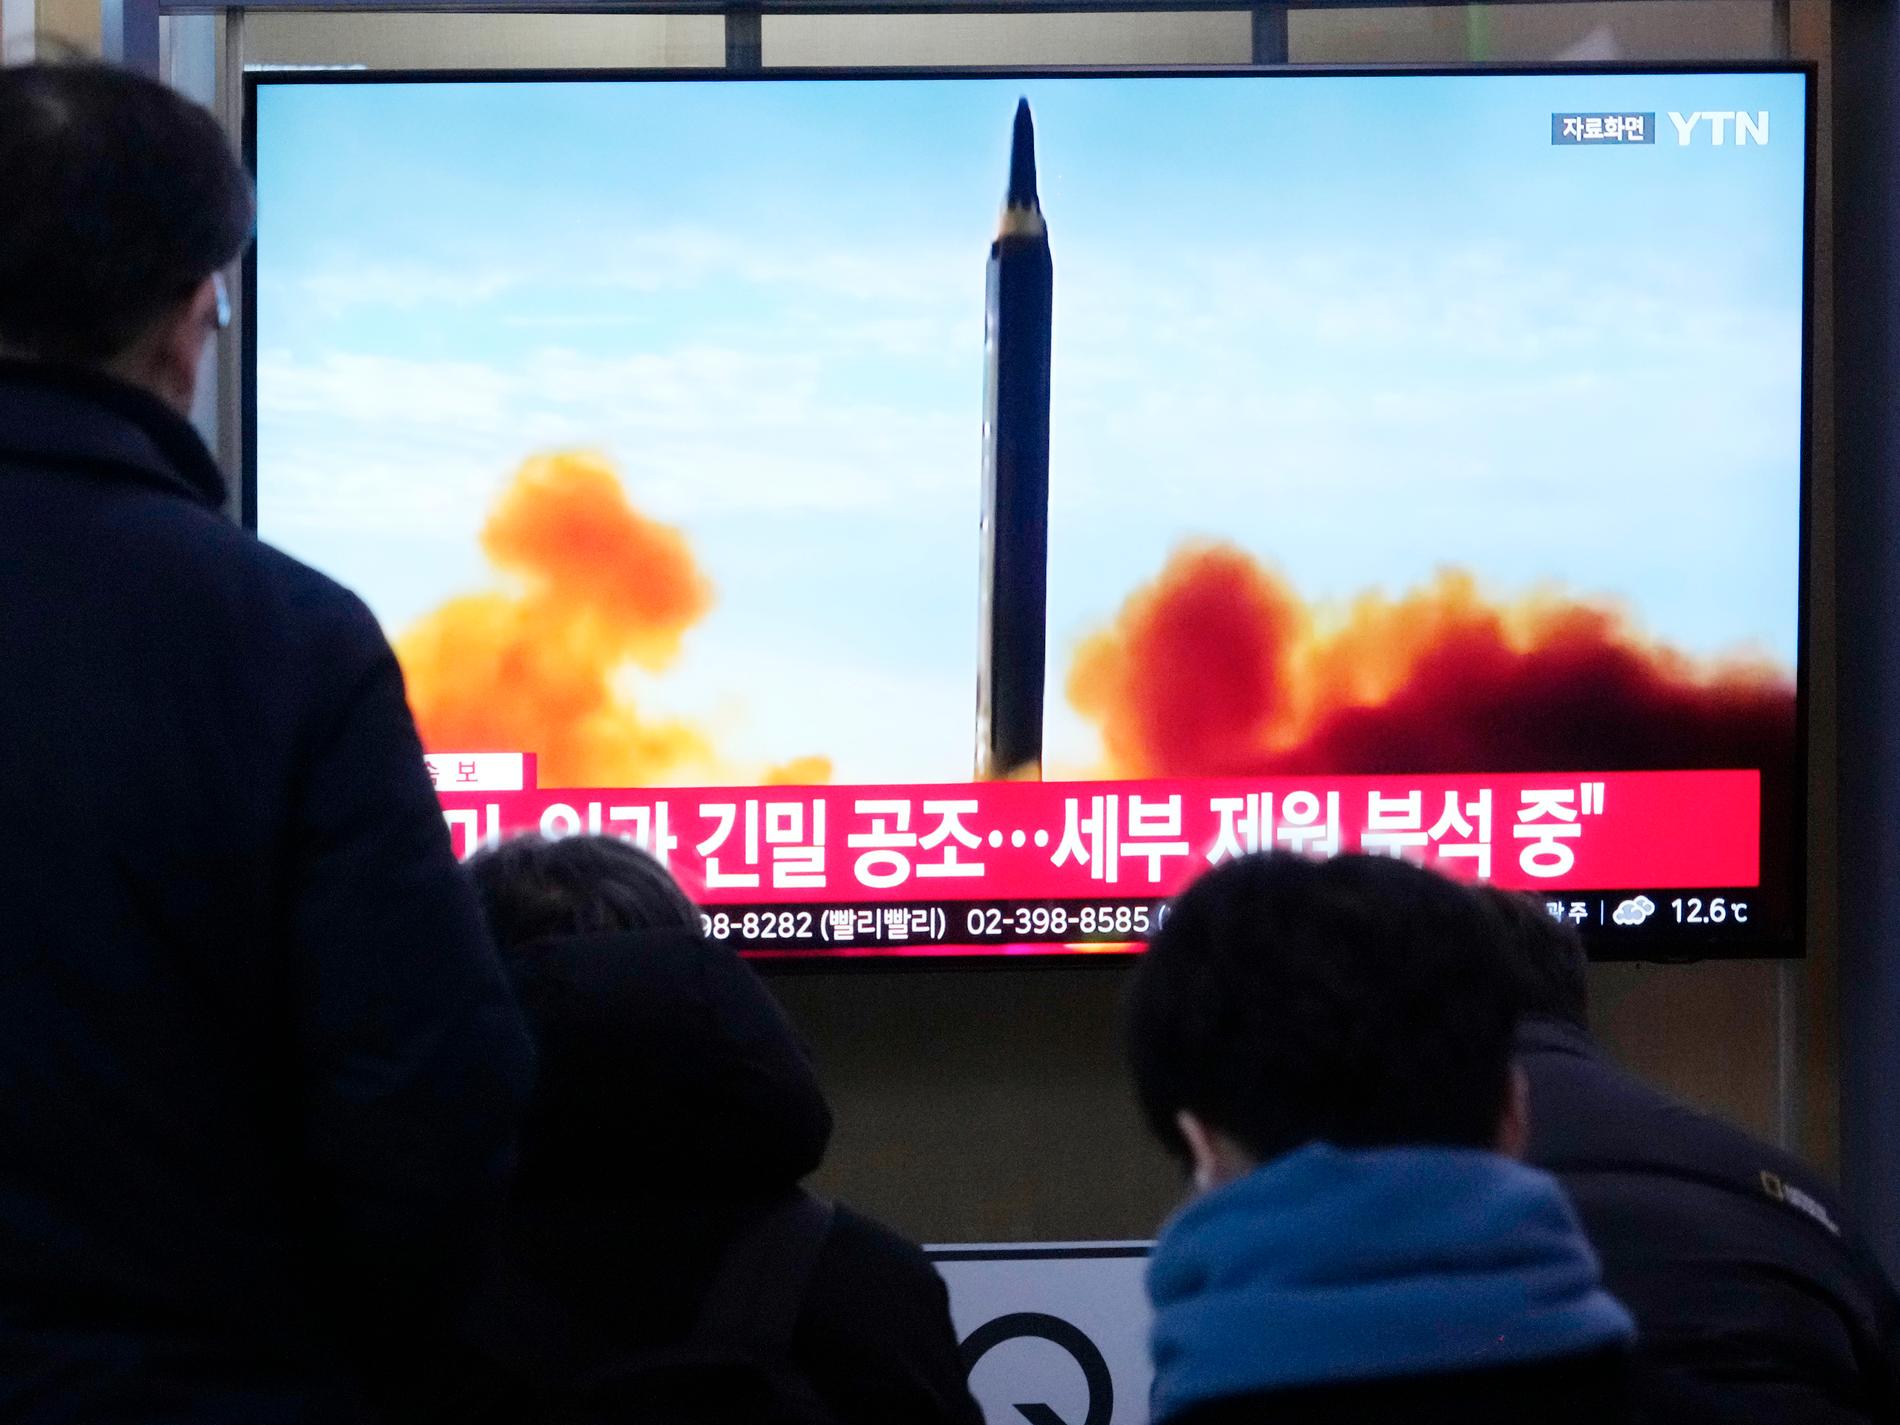 Nordkorea har avfyrat kryssningsrobotar